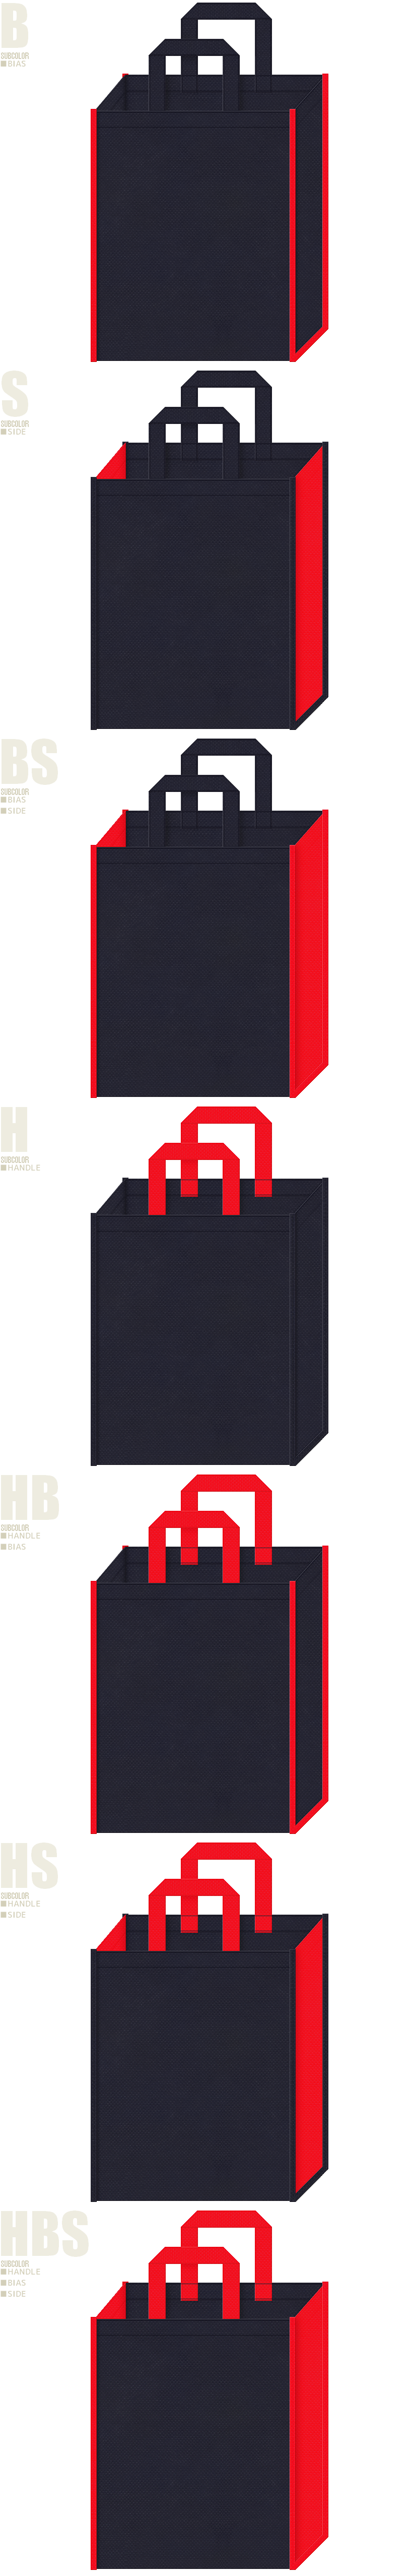 アリーナ・ユニフォーム・シューズ・スポーツイベント・スポーティーファッション・スポーツ用品の展示会用バッグにお奨めの不織布バッグデザイン：濃紺色と赤色の配色7パターン